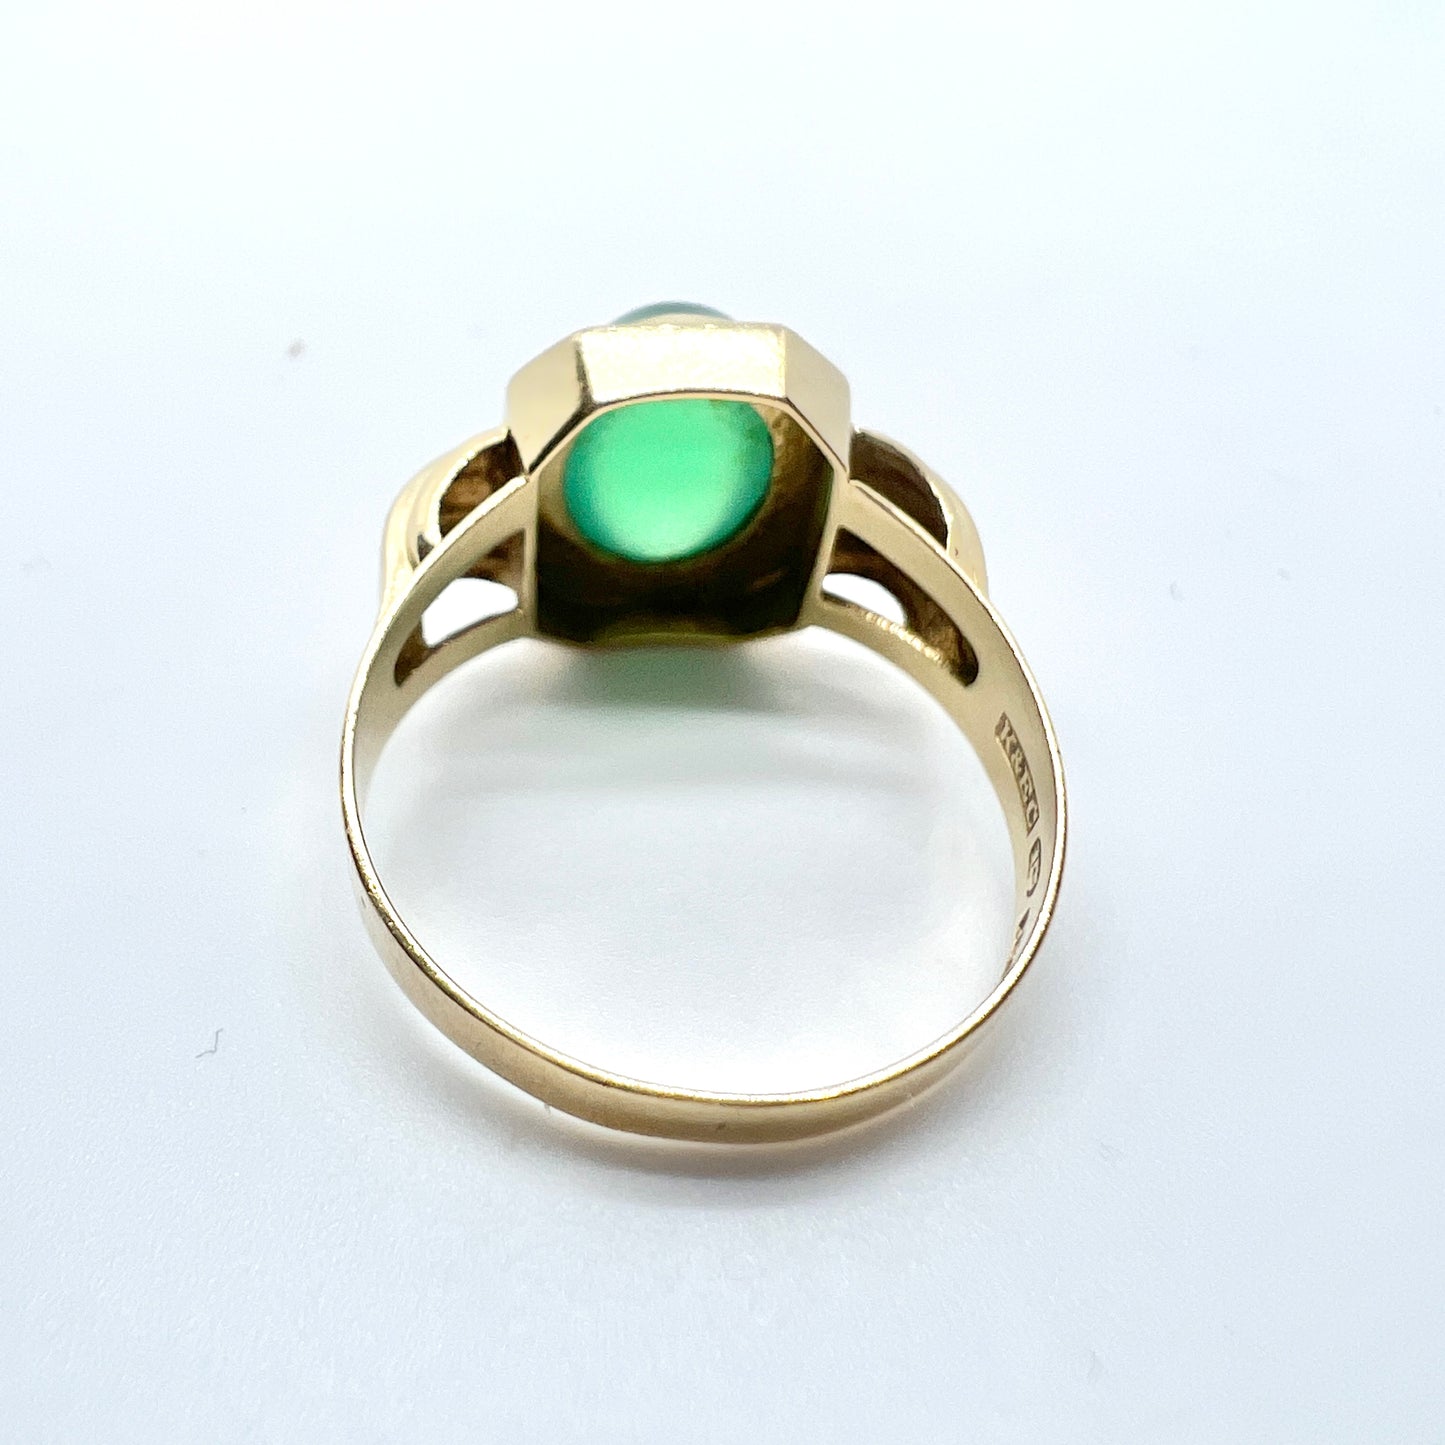 Ceson, Sweden 1955. Vintage 18k Gold Green Chrysoprase Ring